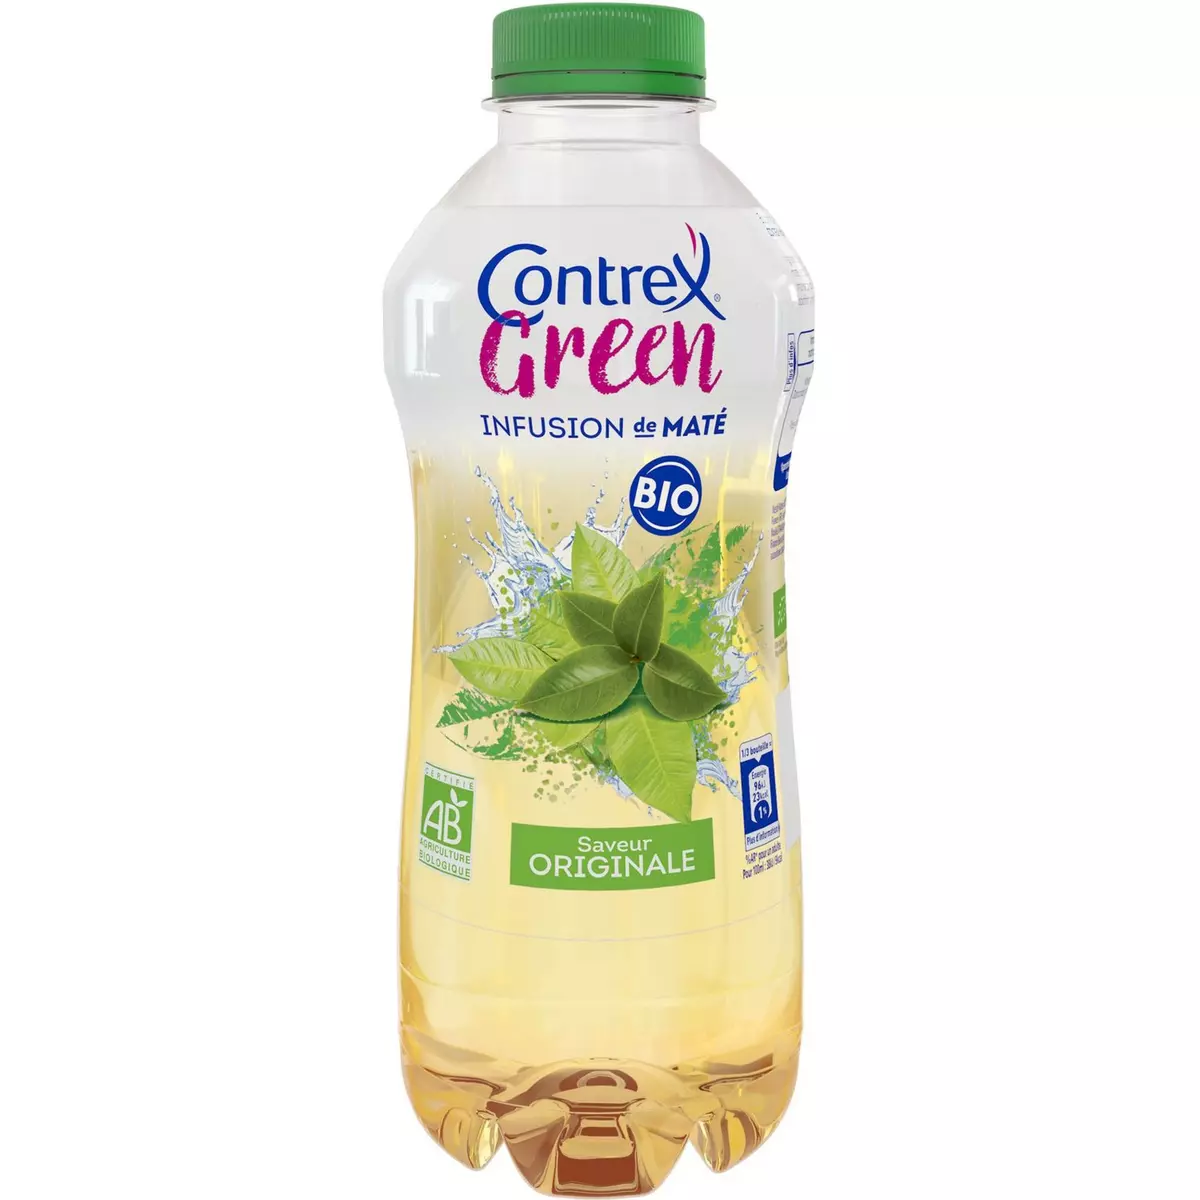 CONTREX Green boisson bio originale aromatisée et infusion de maté 75cl